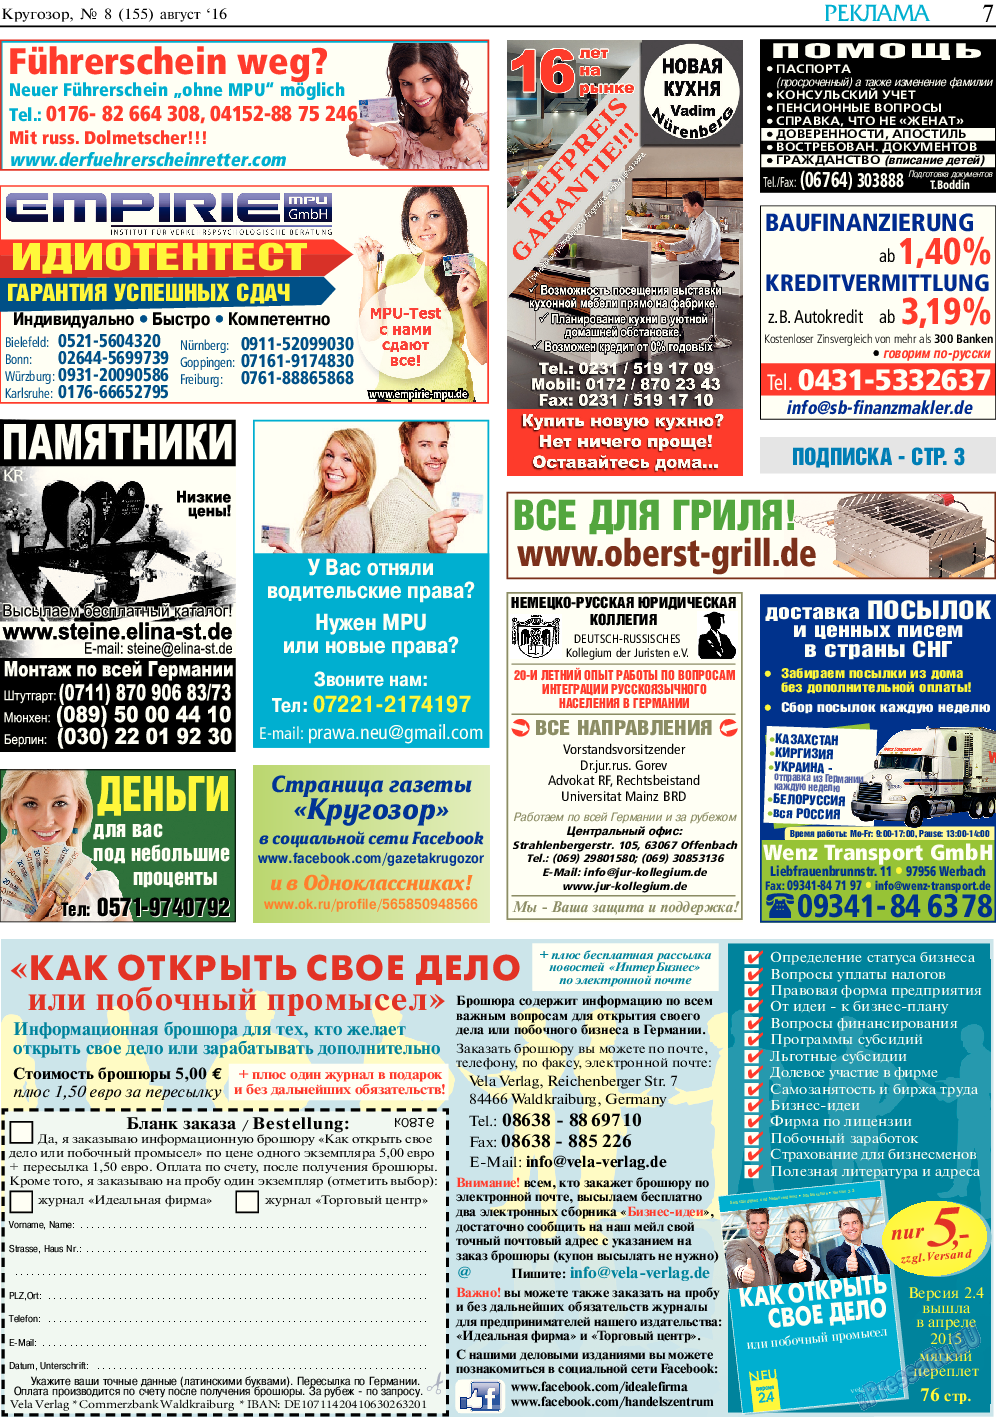 Кругозор, газета. 2016 №8 стр.7